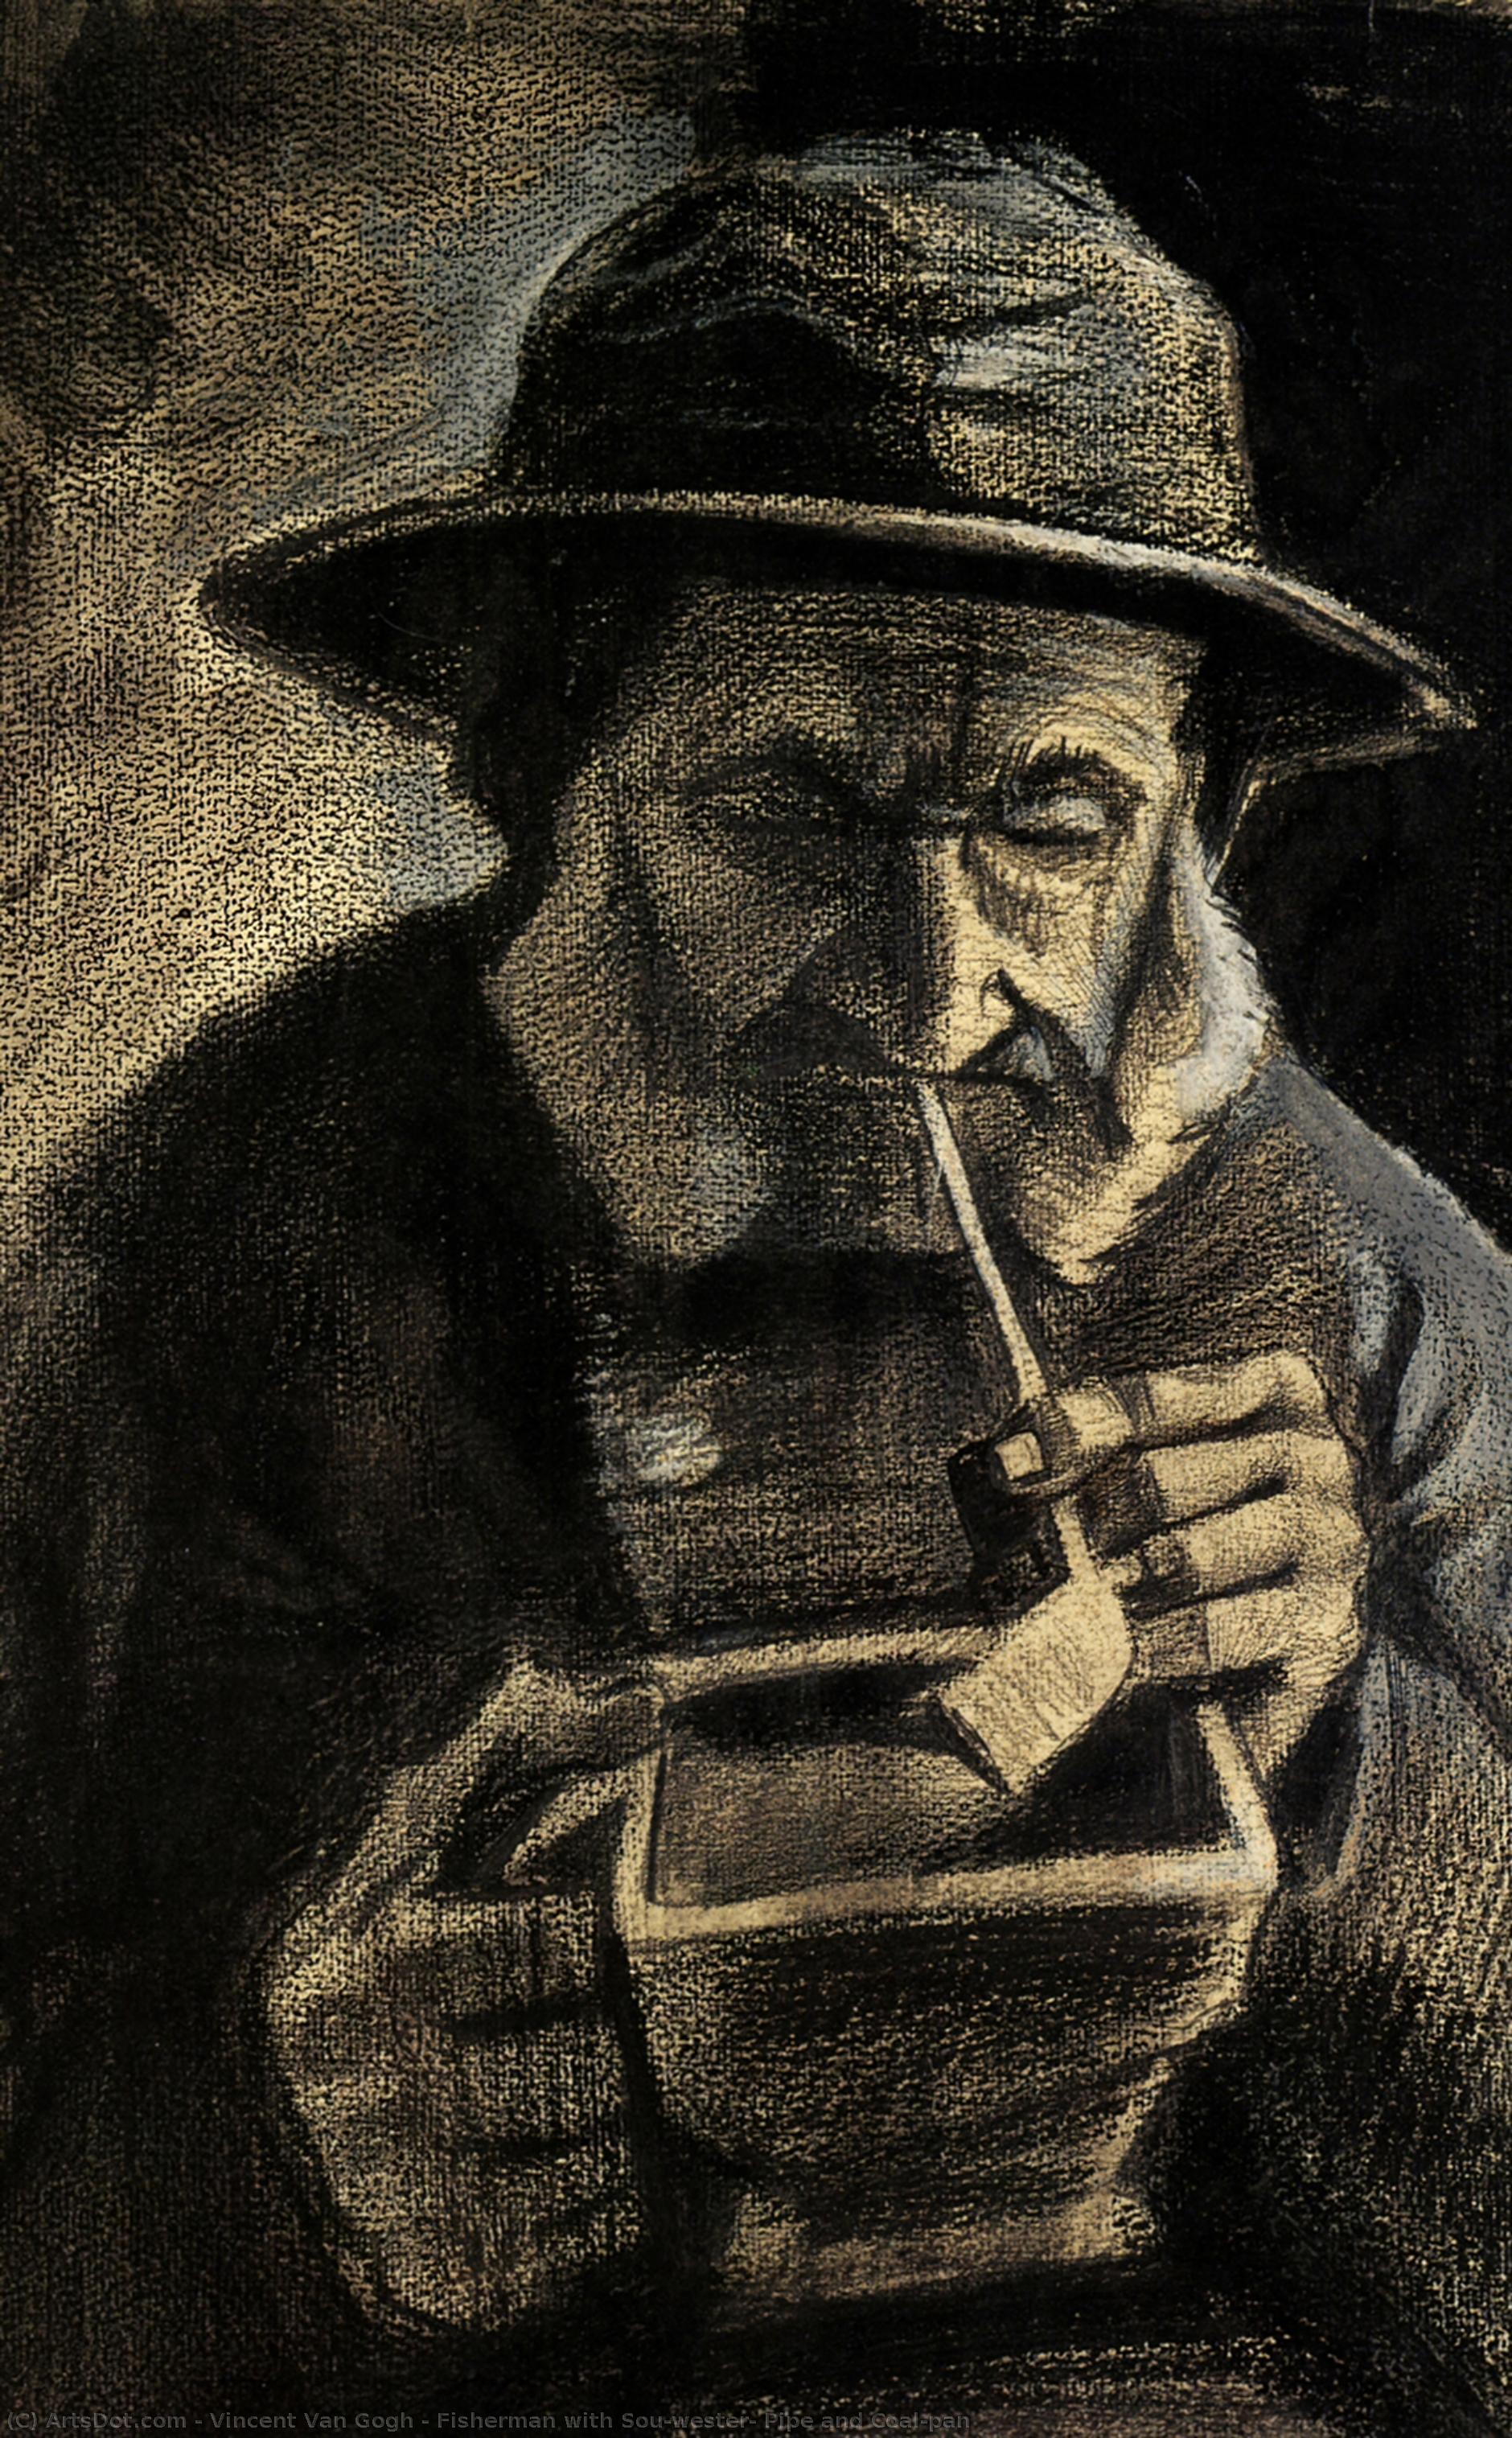 Wikioo.org - Bách khoa toàn thư về mỹ thuật - Vẽ tranh, Tác phẩm nghệ thuật Vincent Van Gogh - Fisherman with Sou'wester, Pipe and Coal-pan